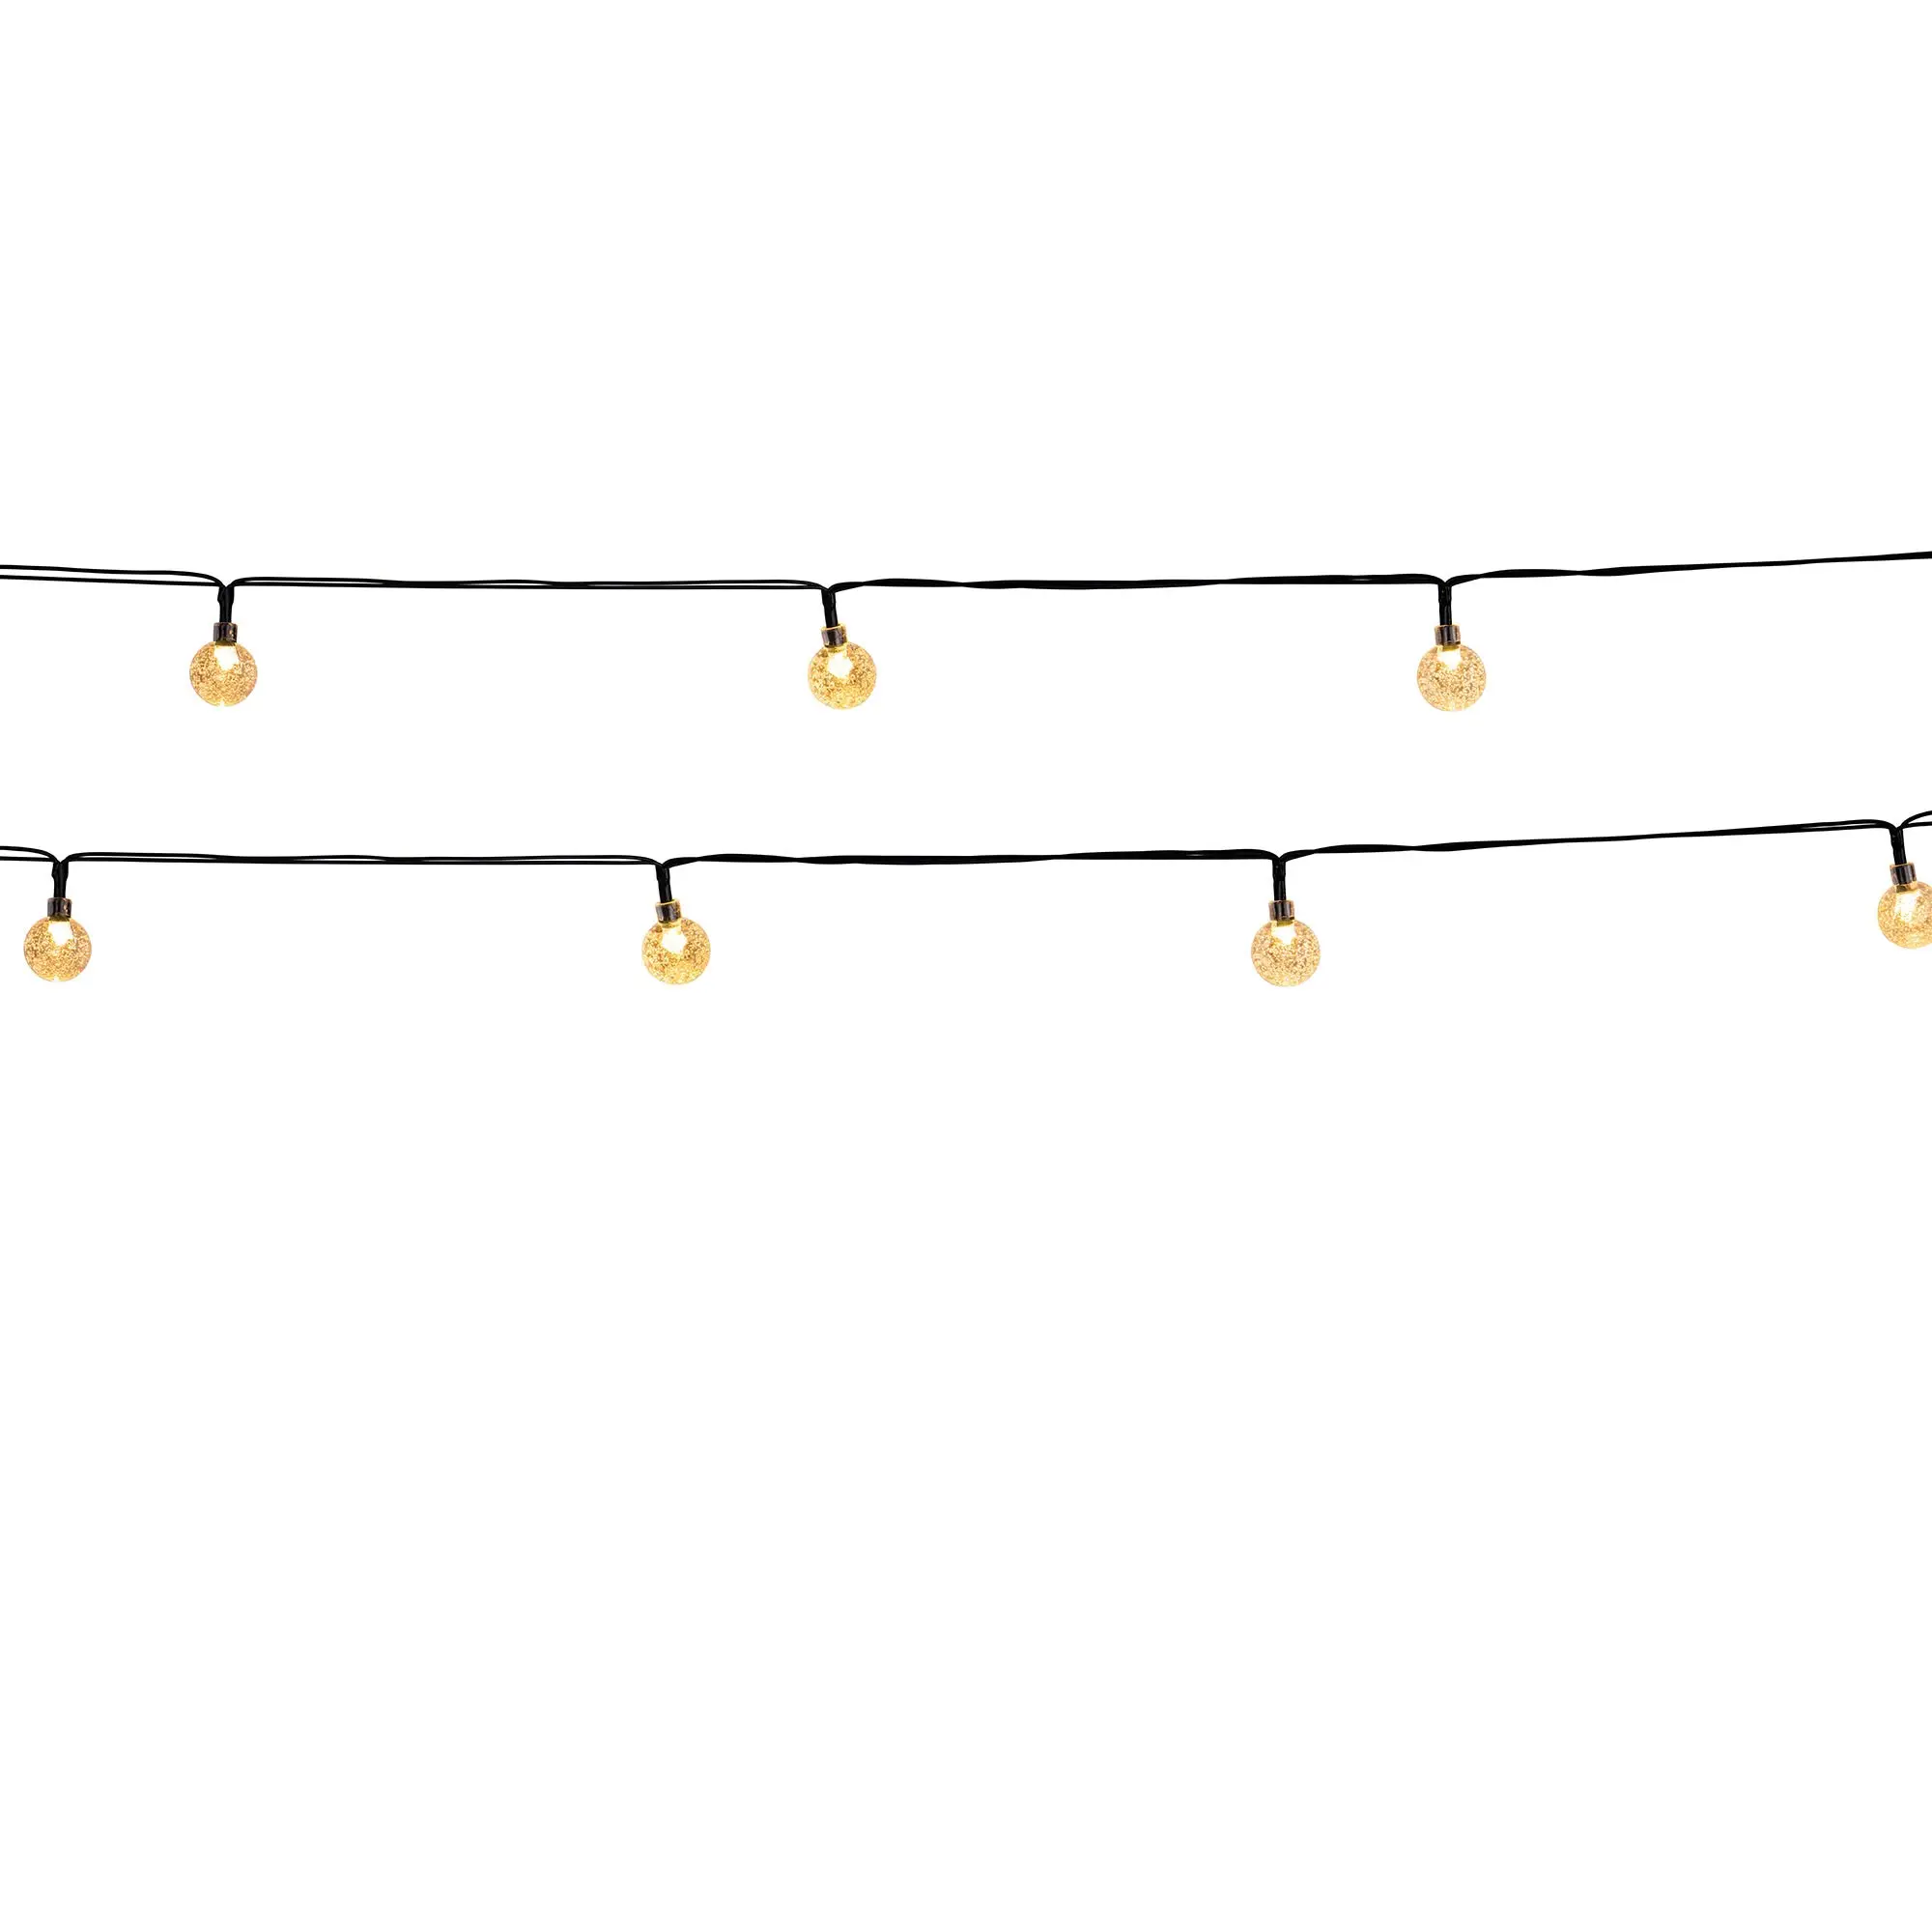 warmweisse LED-Lichterkette FESTY WHITE | Lichterketten & Leuchtobjekte